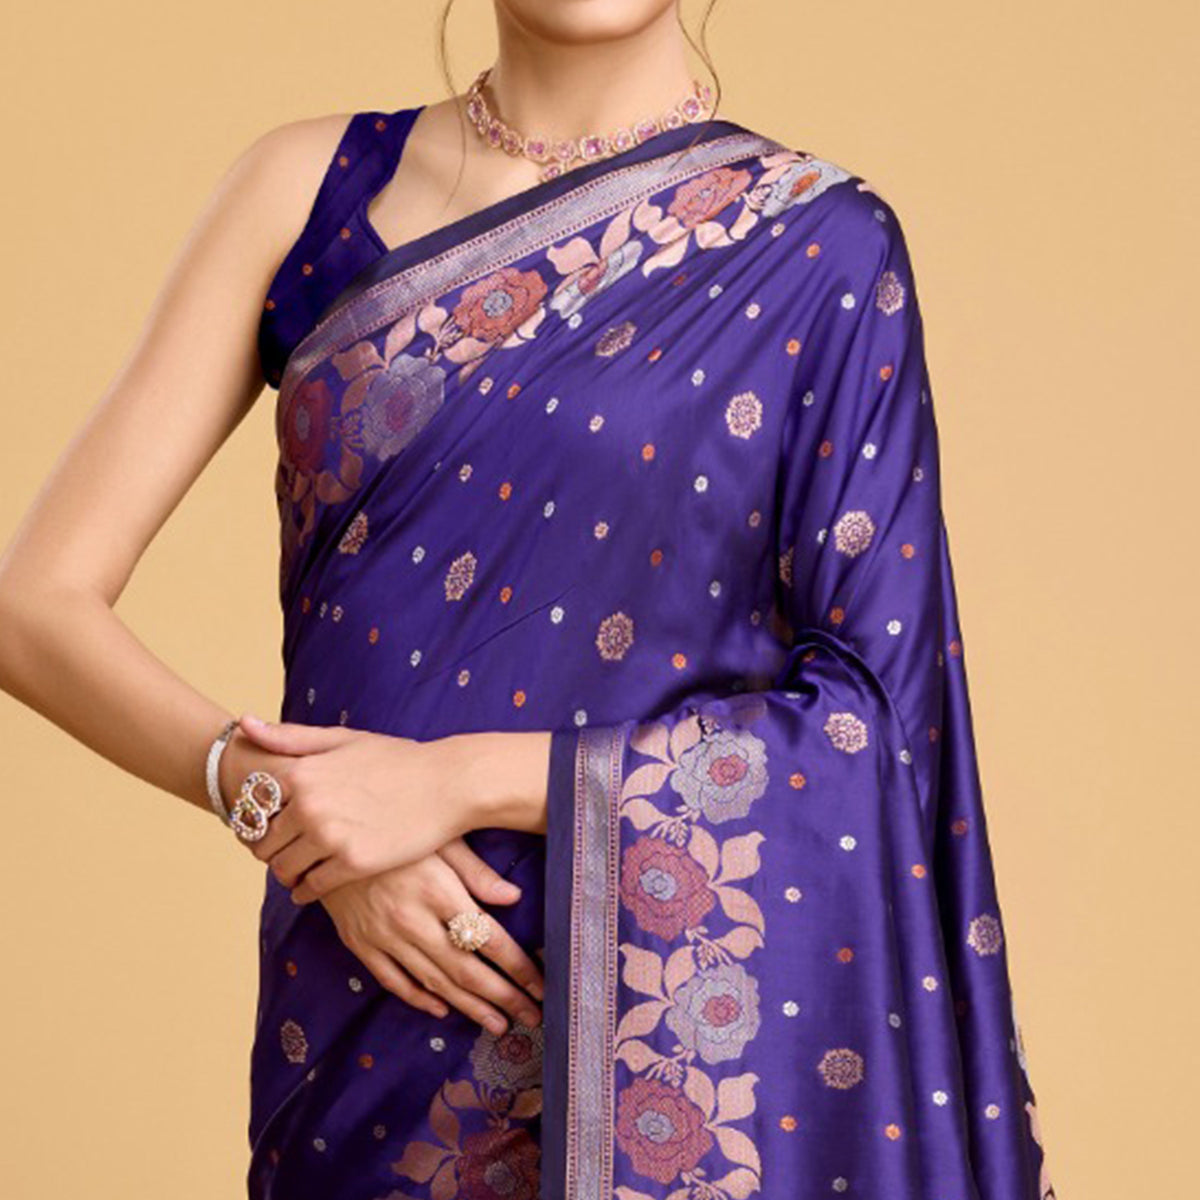 Violet Floral Woven Banarasi Silk Saree